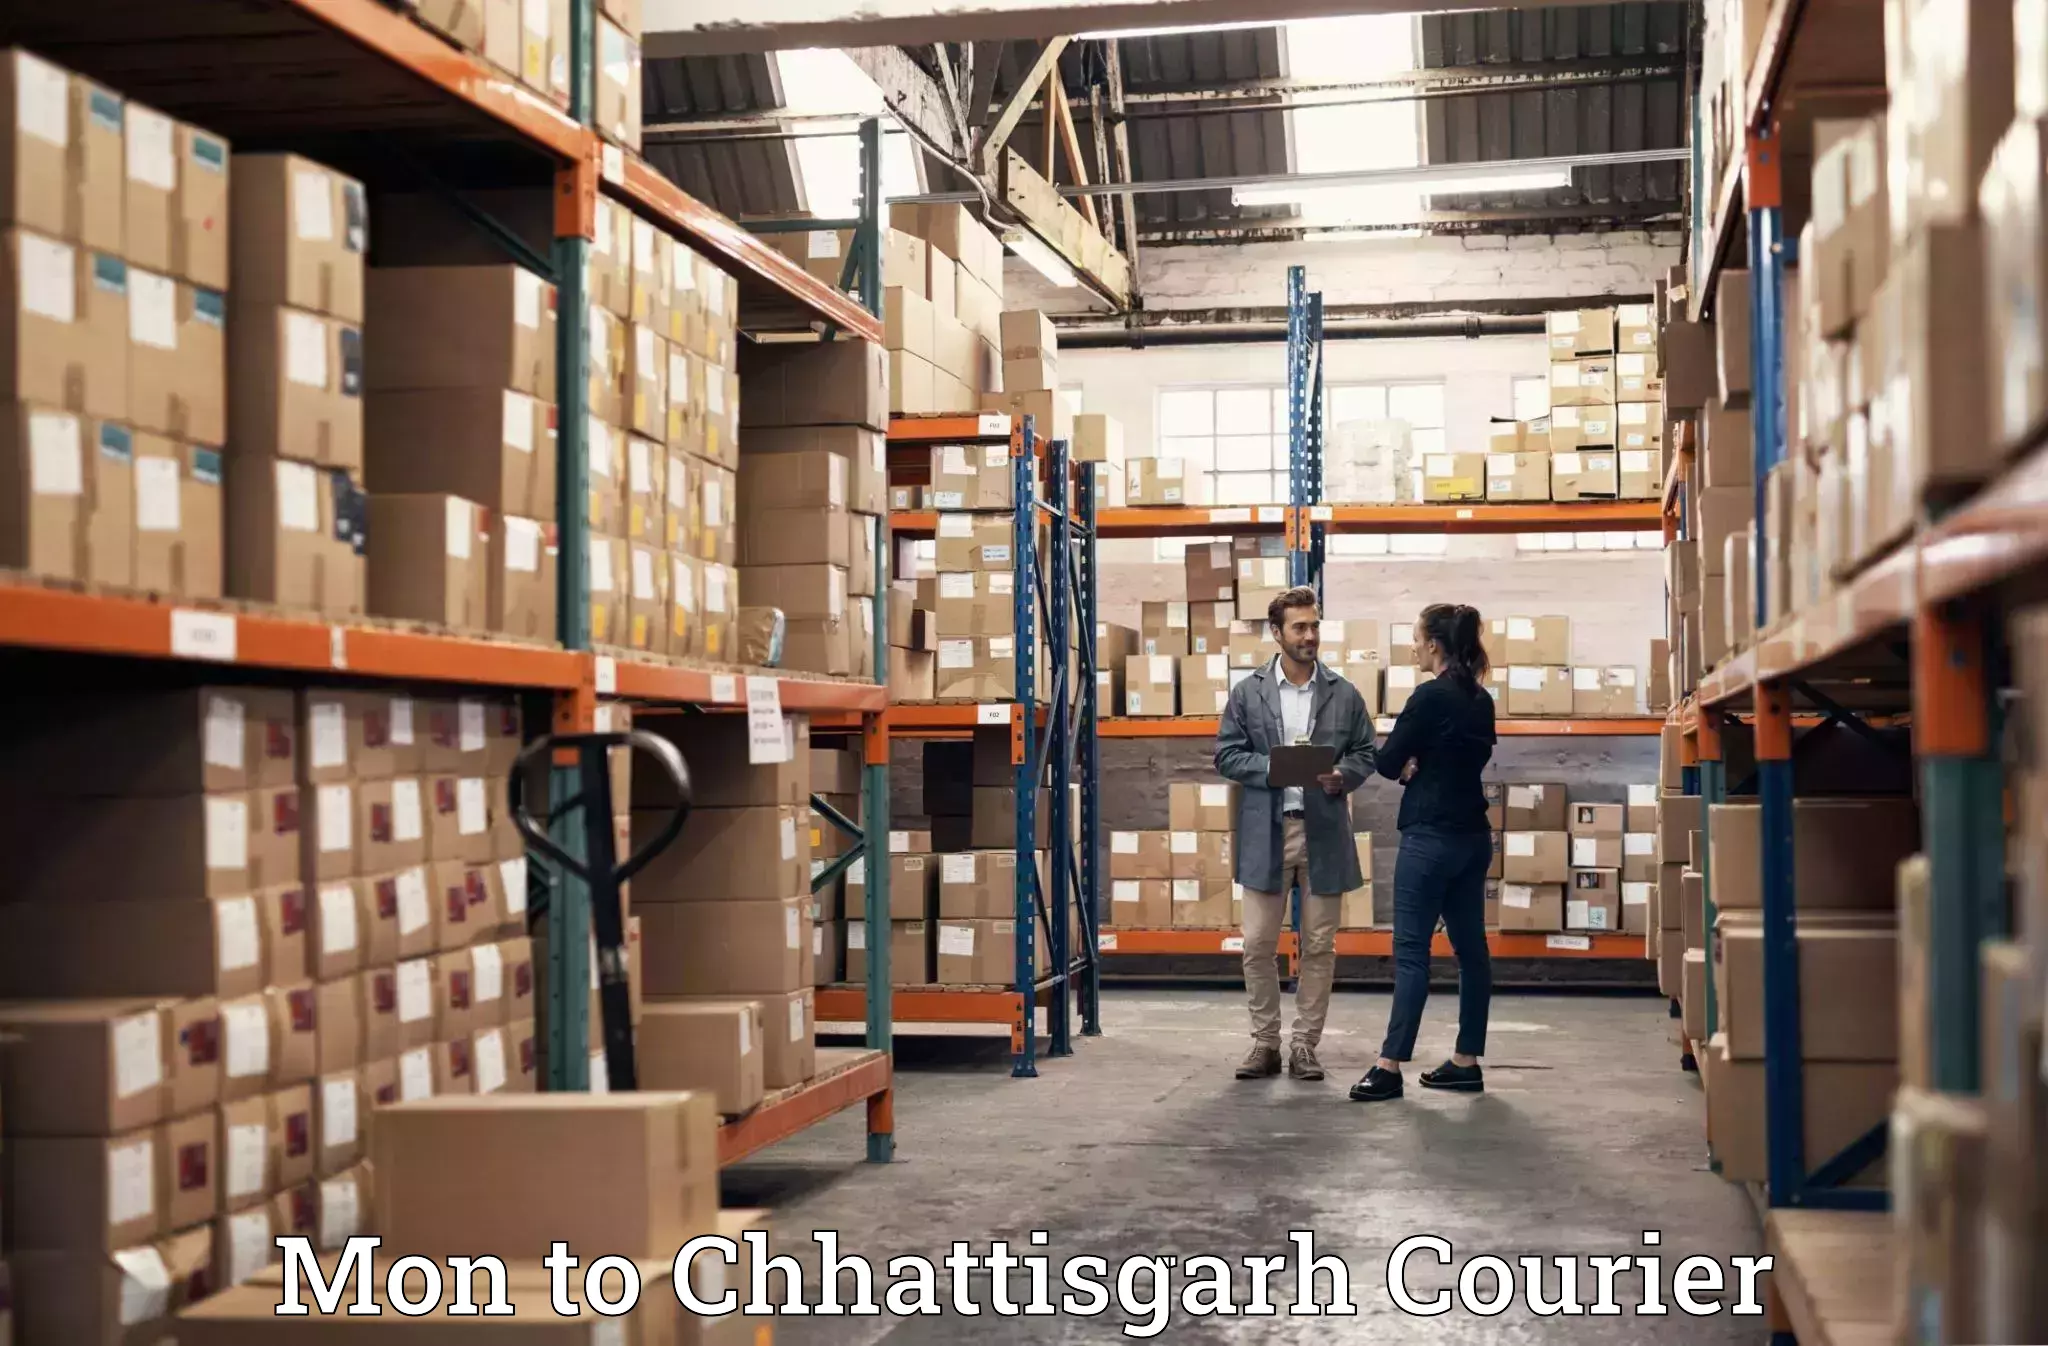 Trusted relocation services Mon to Chhattisgarh